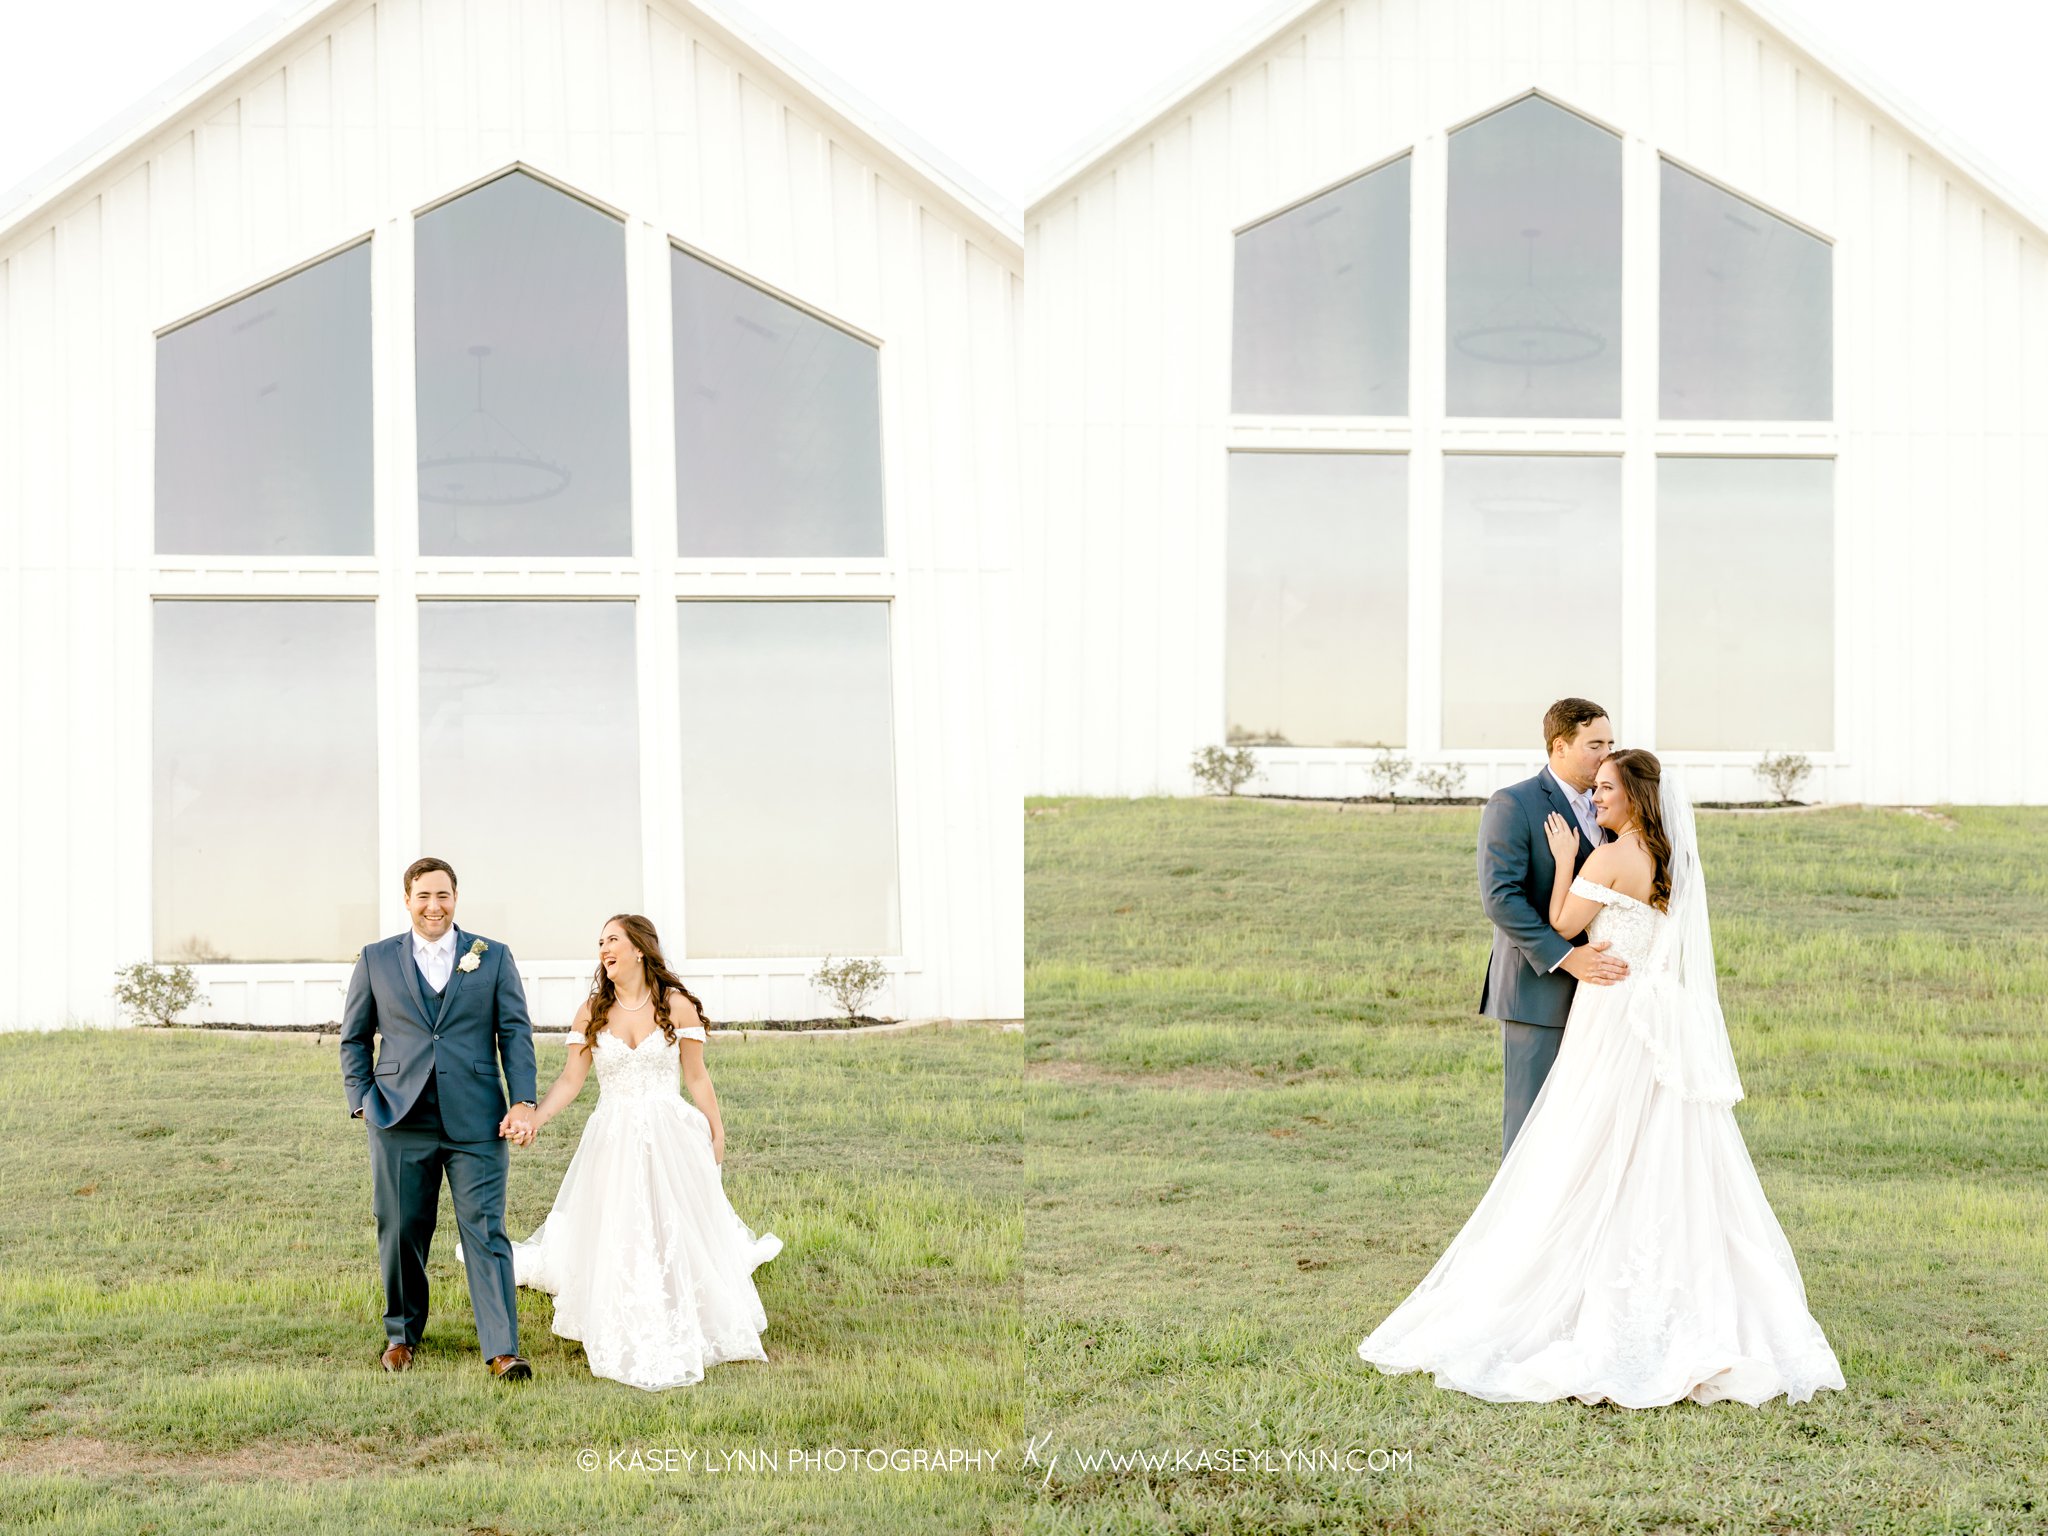 The Farmhouse Wedding Photographer / Kasey Lynn Photography